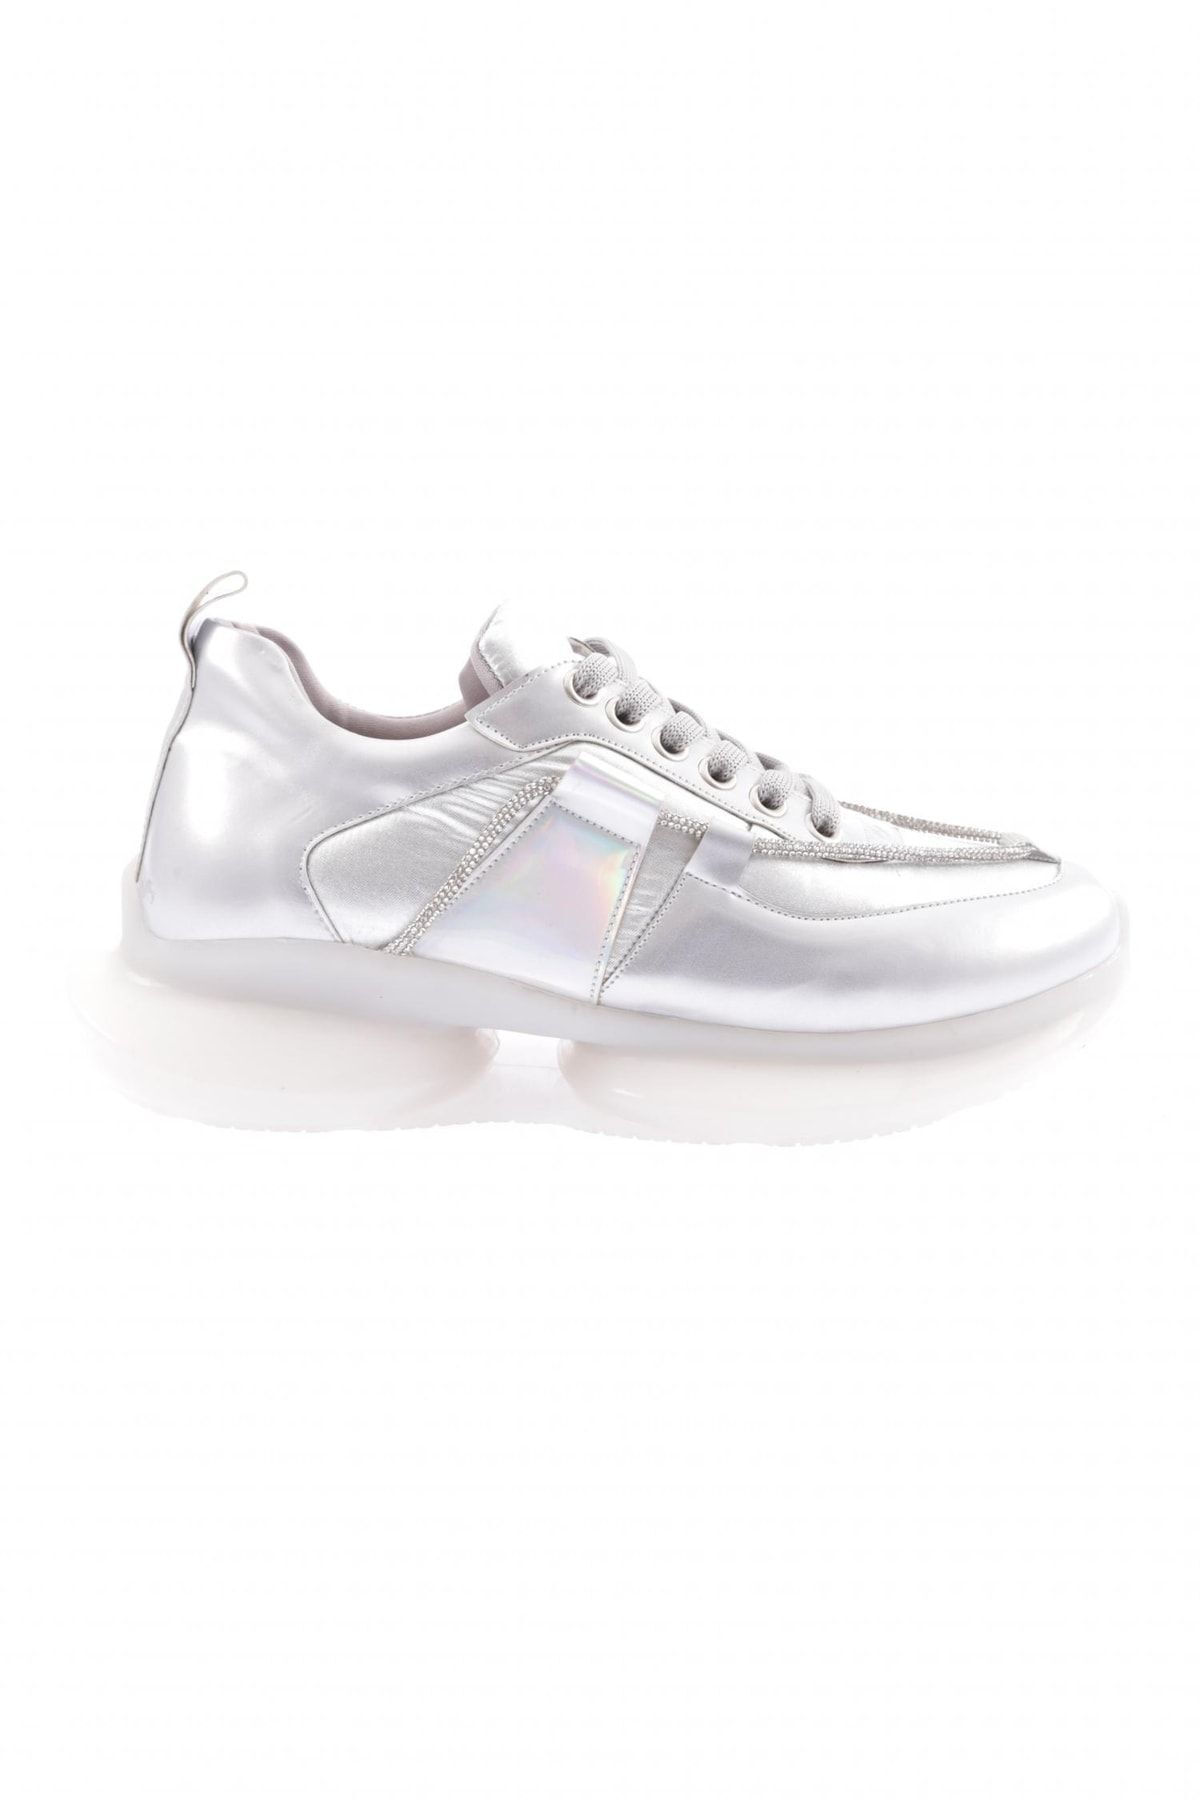 Dgn 954-23y Kadın Kalın Taban Silver Ip Taşlı Sneakers Ayakkabı Gümüş